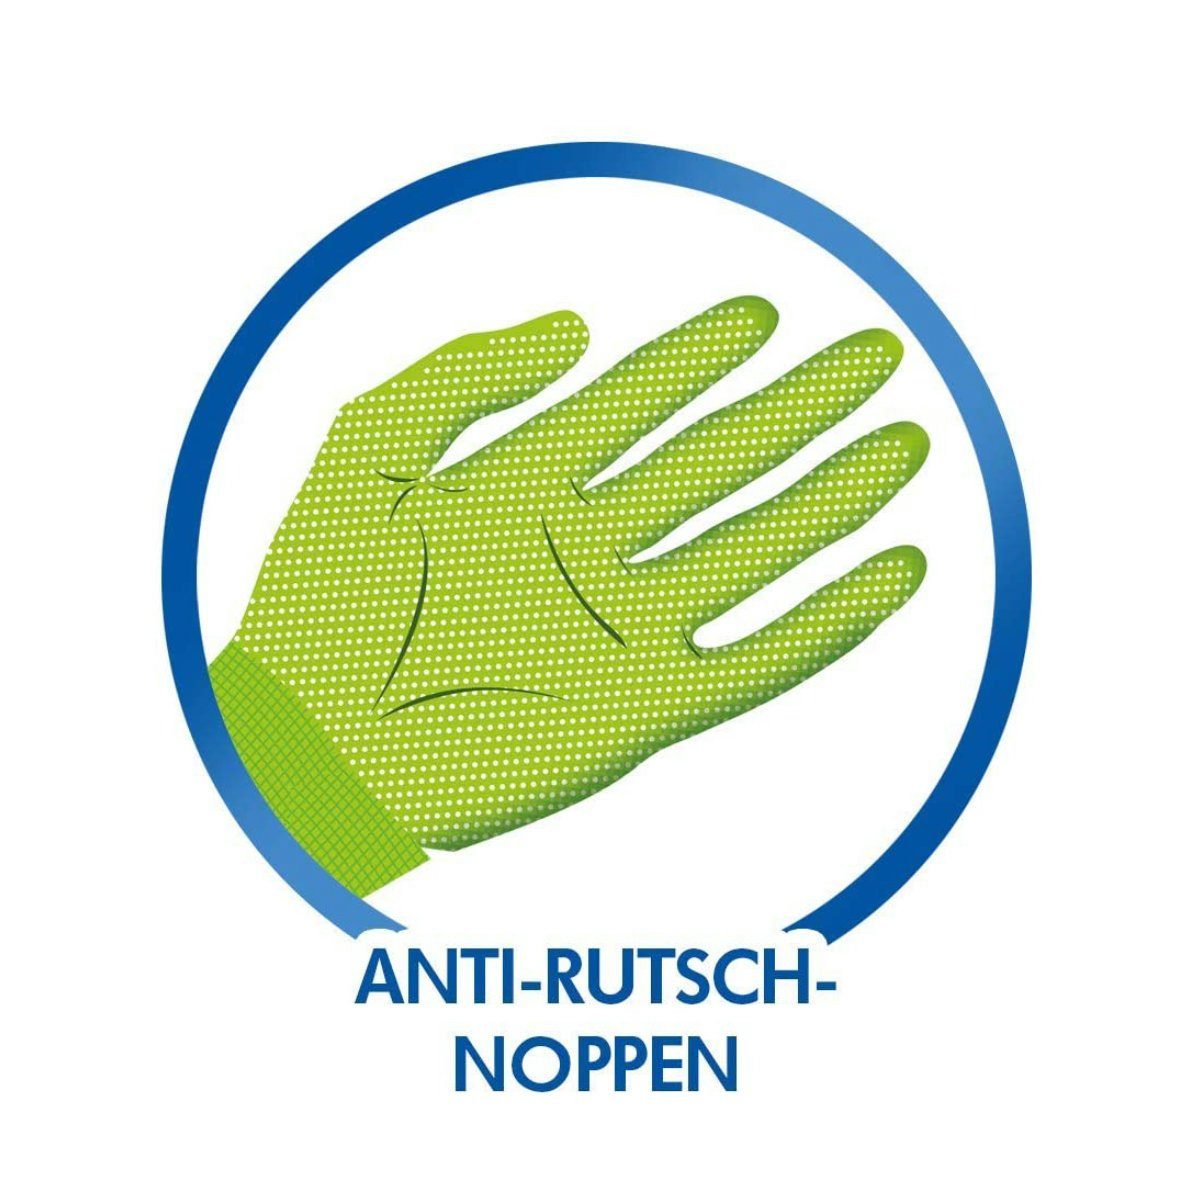 Aniti-Rutsch Gartenhandschuhe SPONTEX Noppen